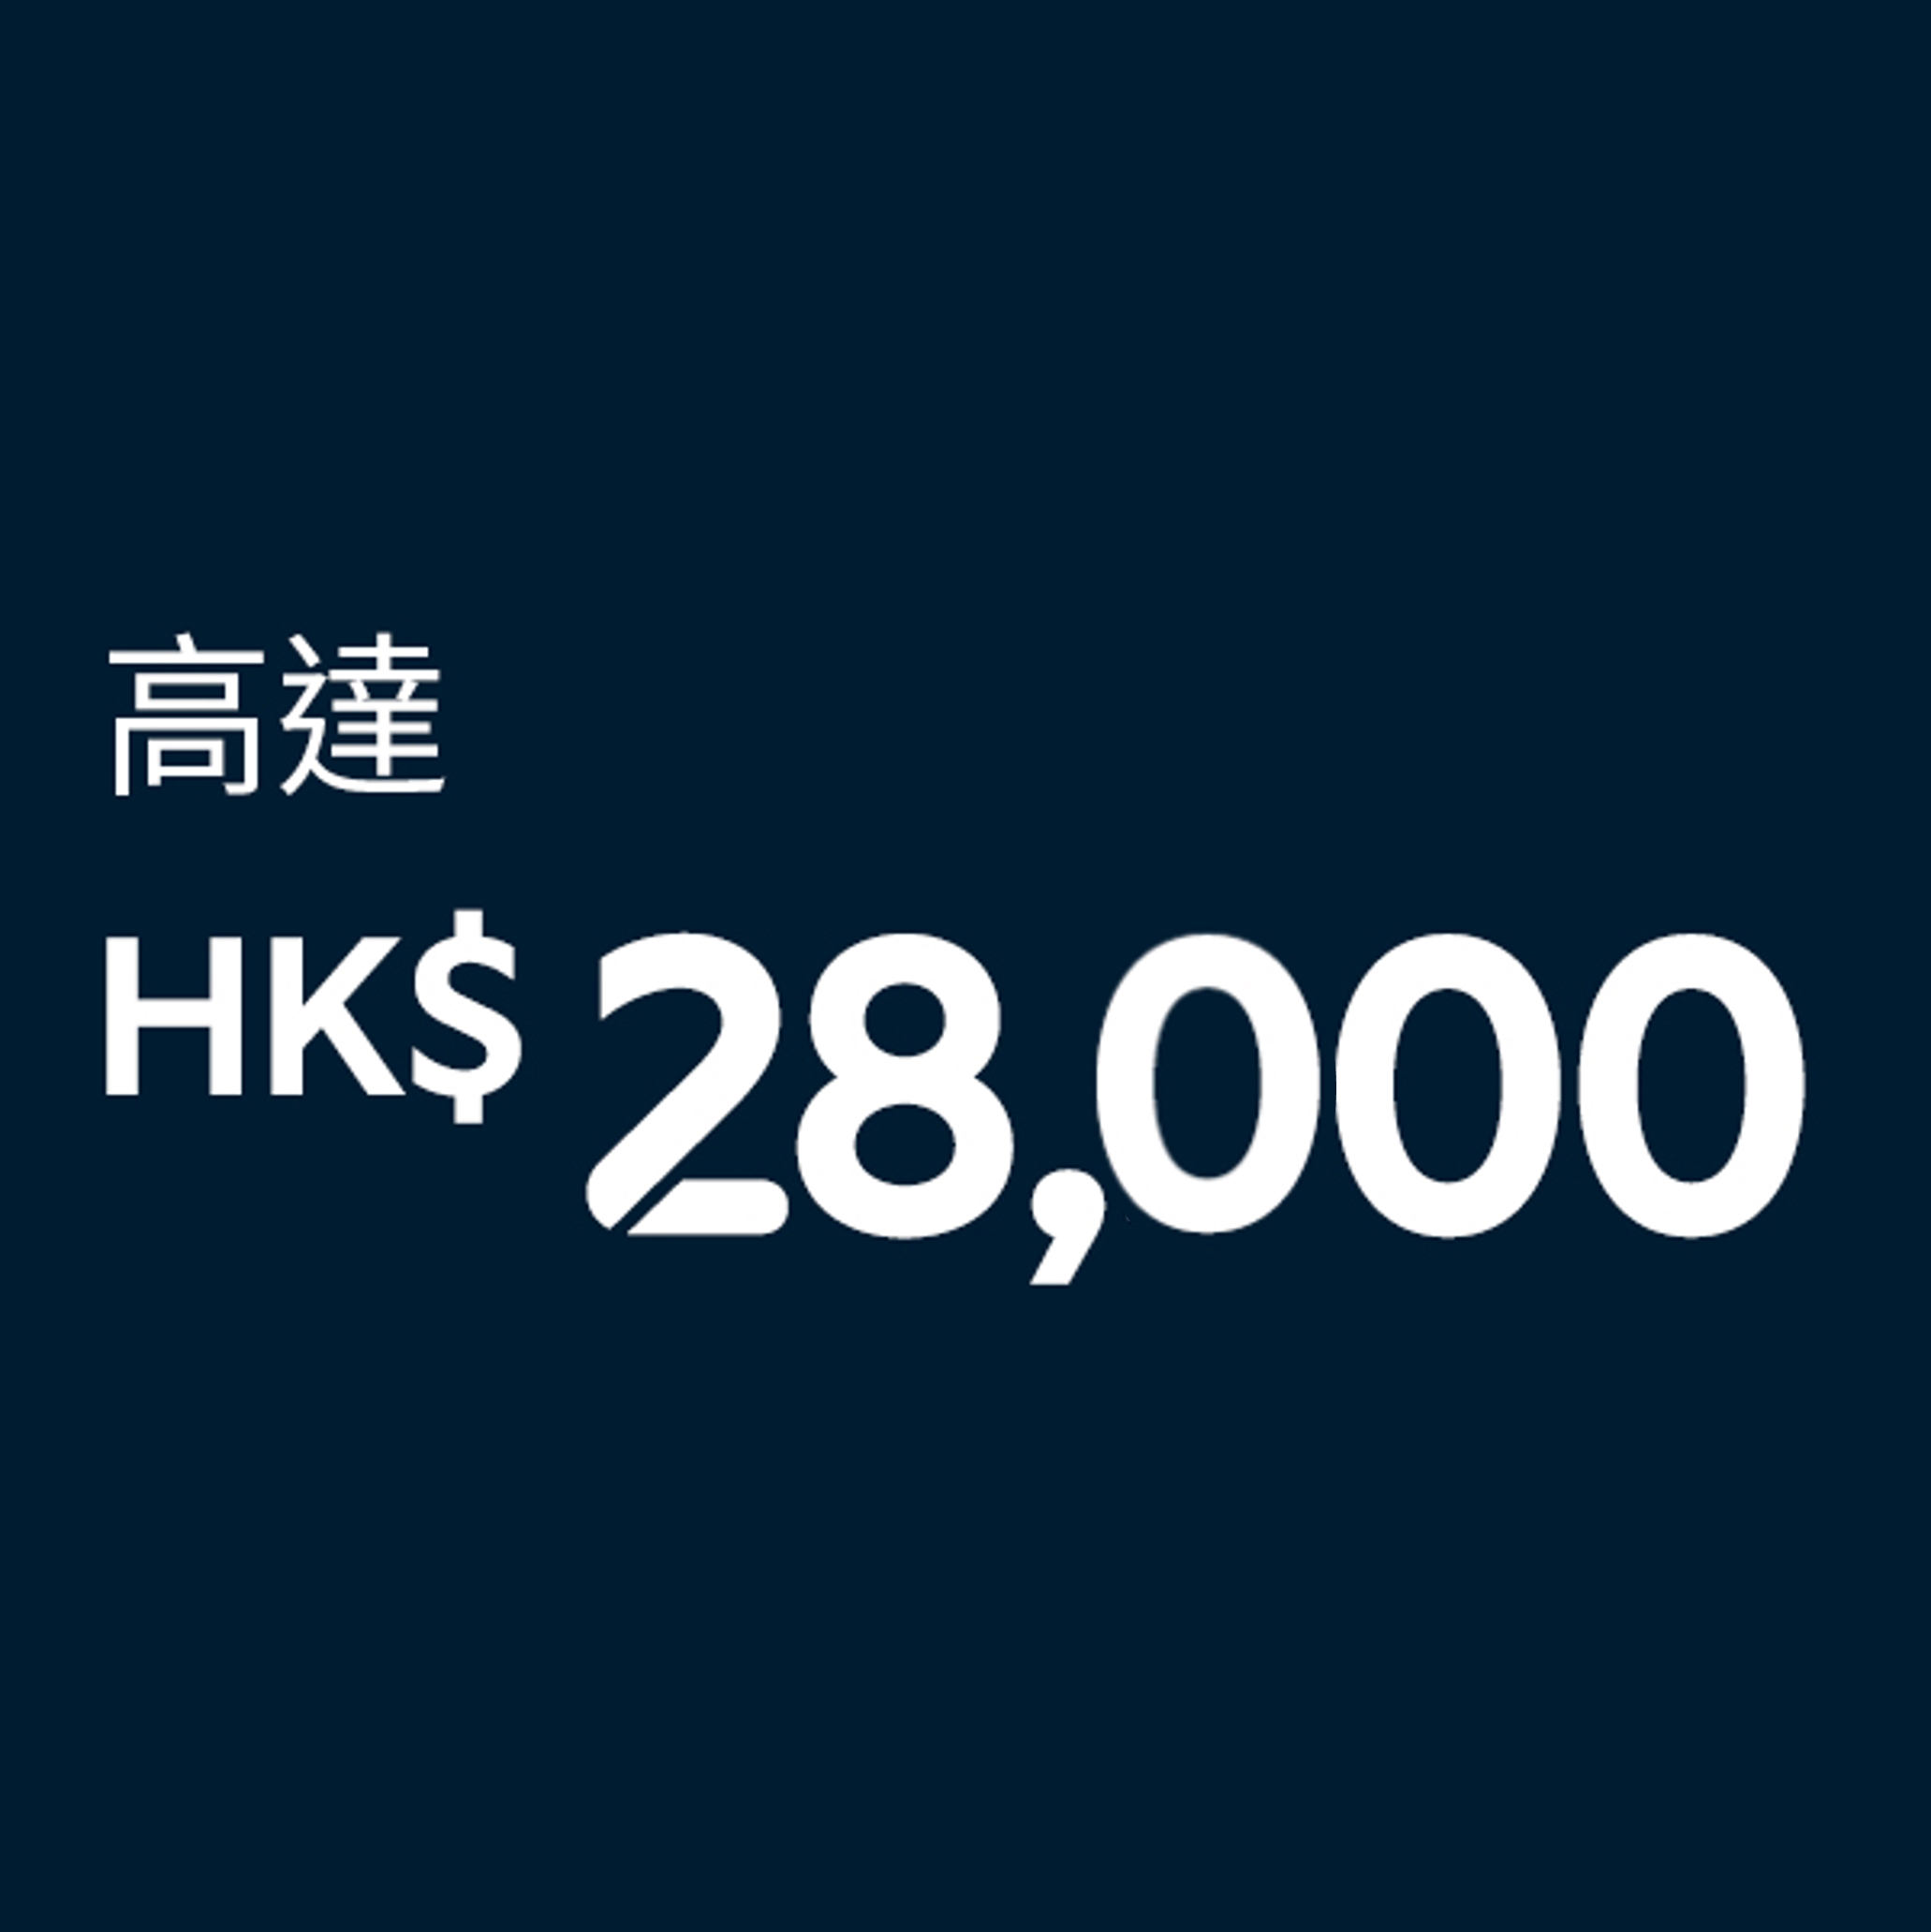 高達HK$28,000